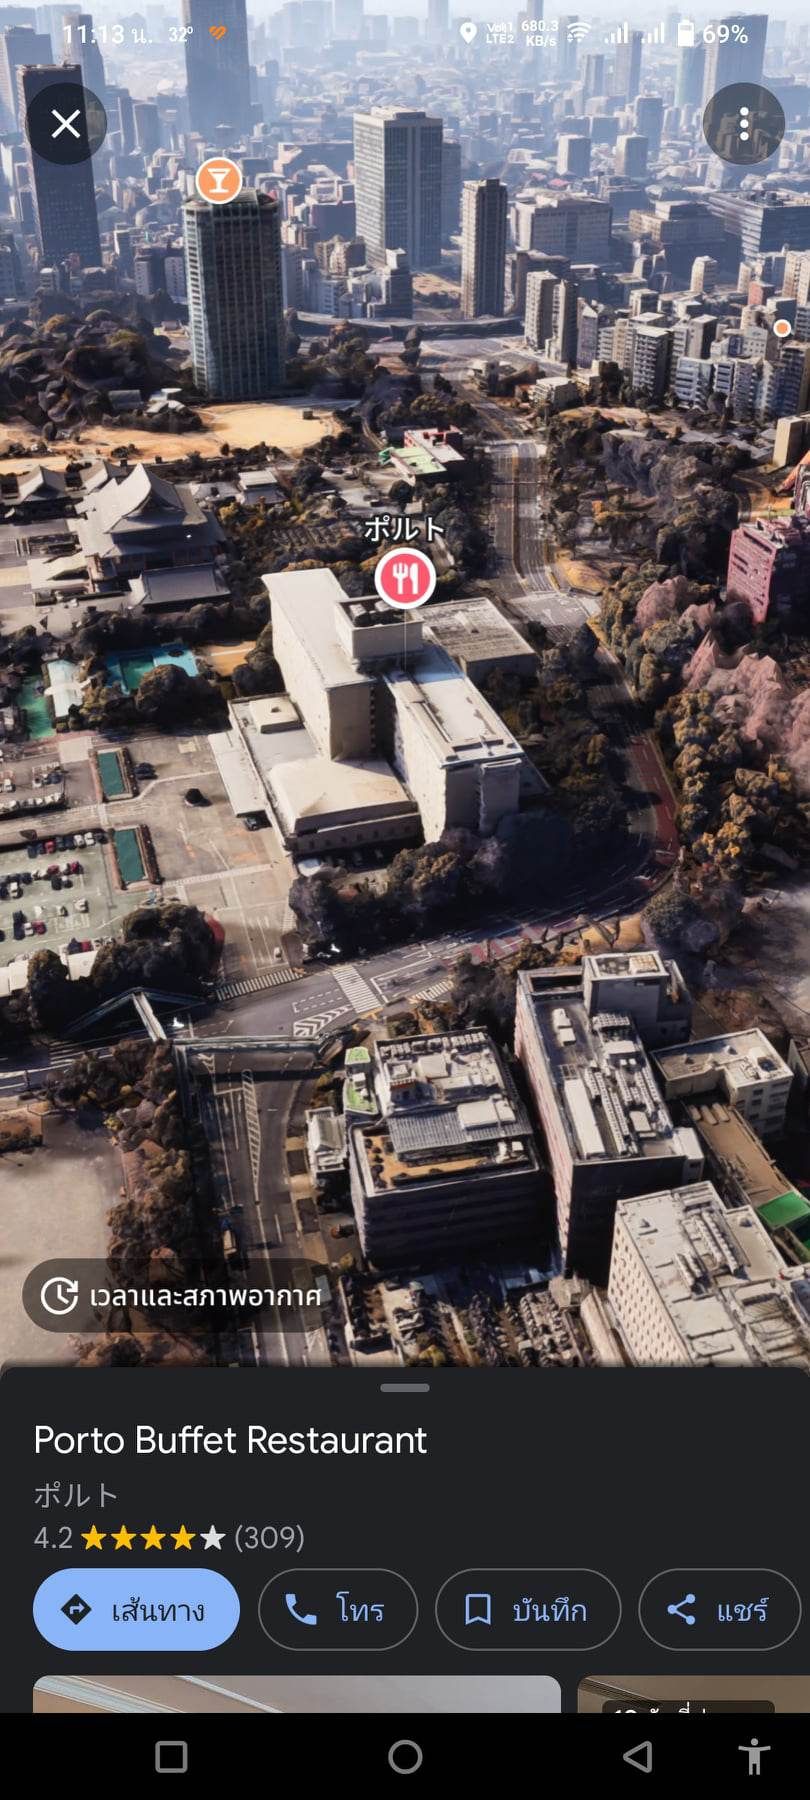 Google Maps Immersive View ส่องแลนด์มาร์คแบบ 3D สมจริง เริ่มปล่อยให้ใช้แล้ว